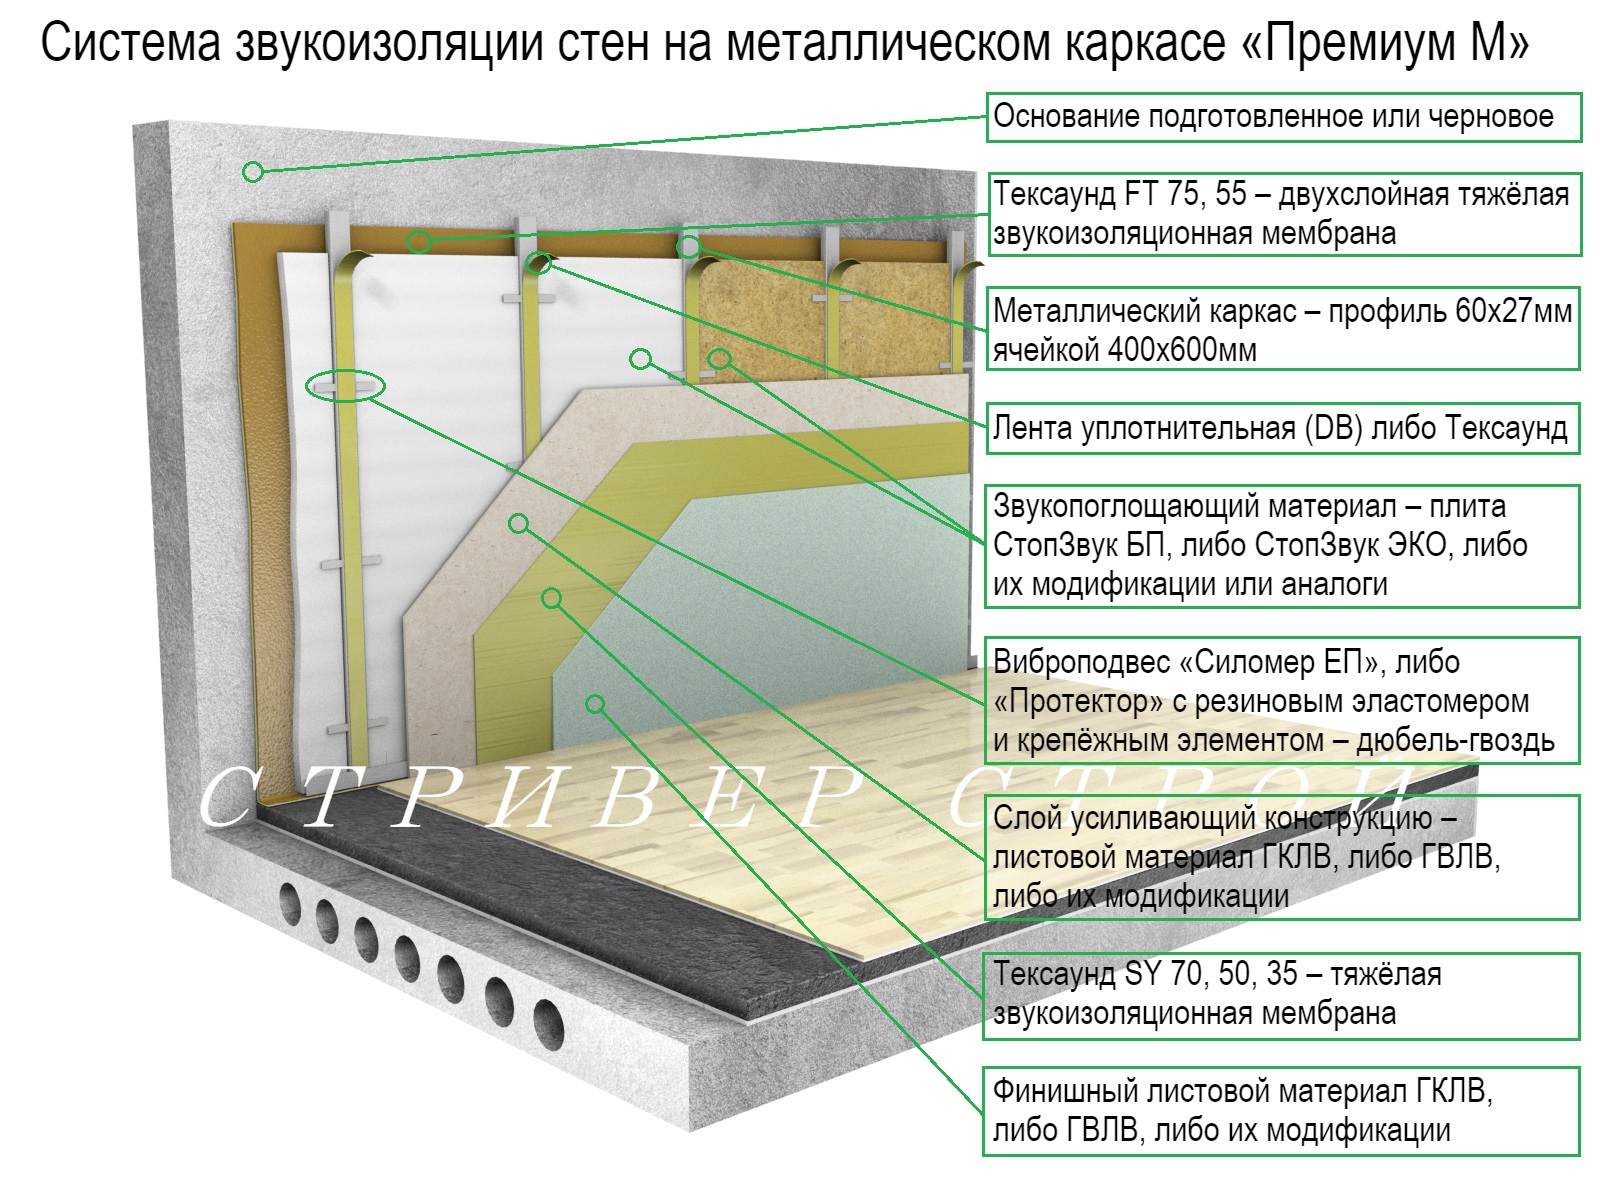 Правильная звукоизоляция. Звукоизоляция стен венткамеры с112. Схемы установки звукоизоляции. Шумоизоляция стен схема монтажа. Звукоизоляция внутренних стен схема.